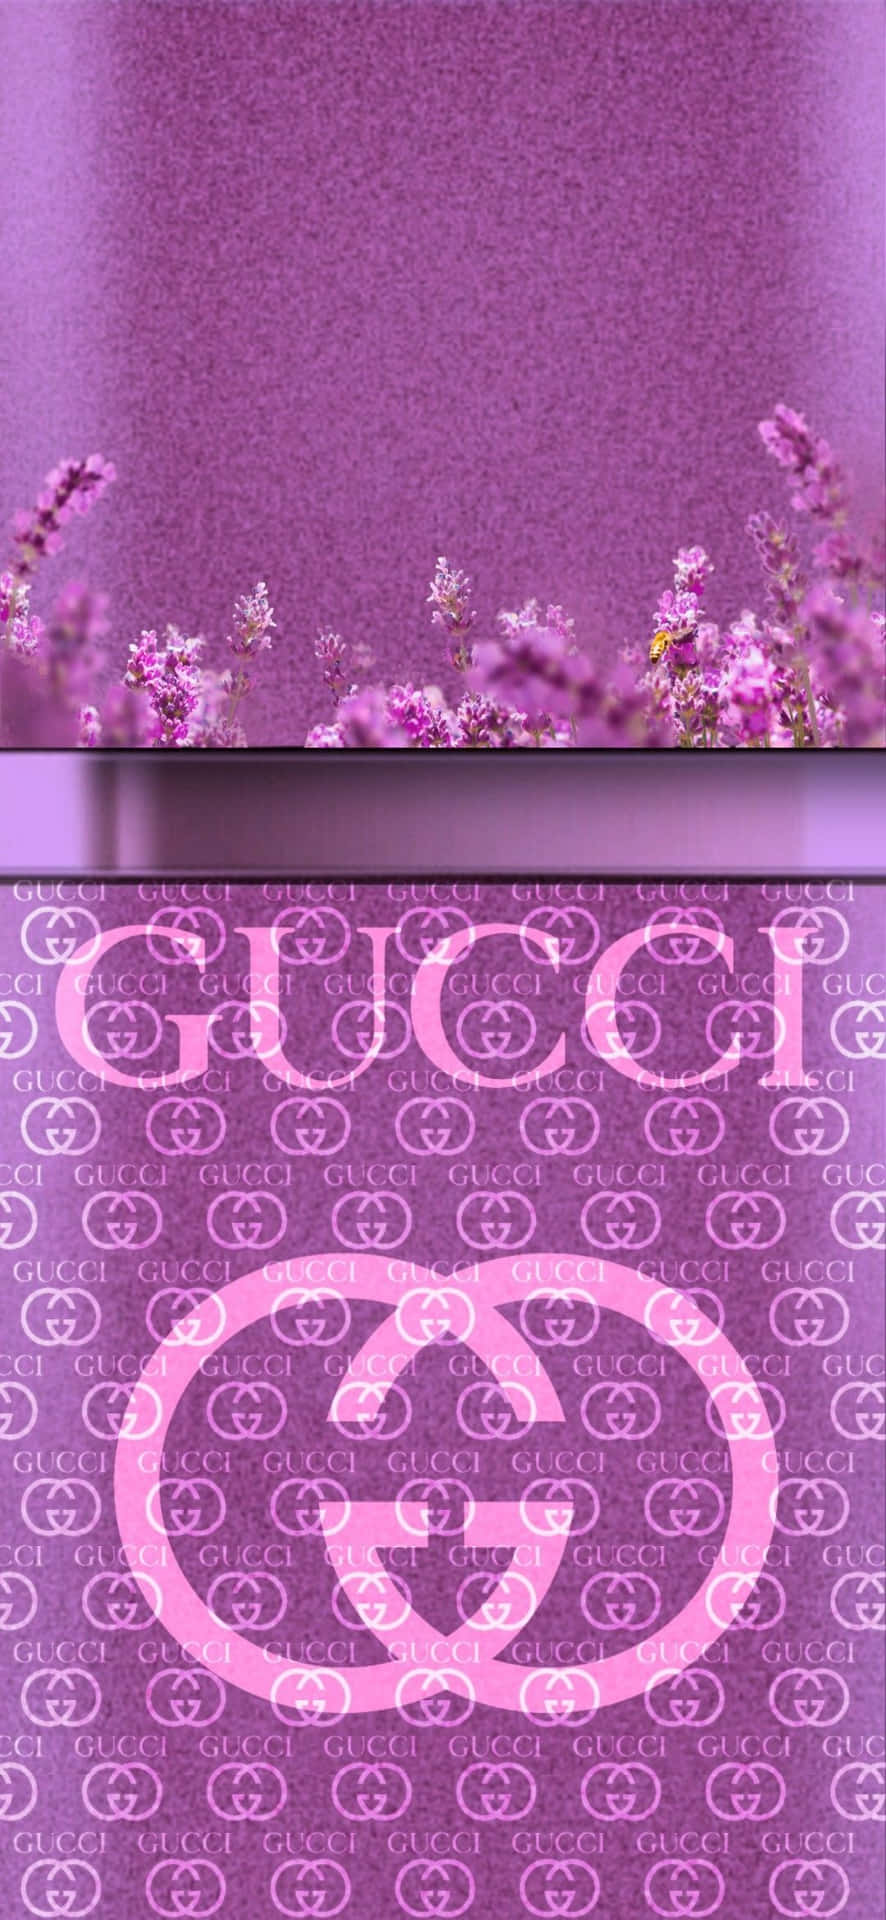 Strut Dig Ud i Stil med Lilla Gucci-Inspireret Blomster Tapet! Wallpaper